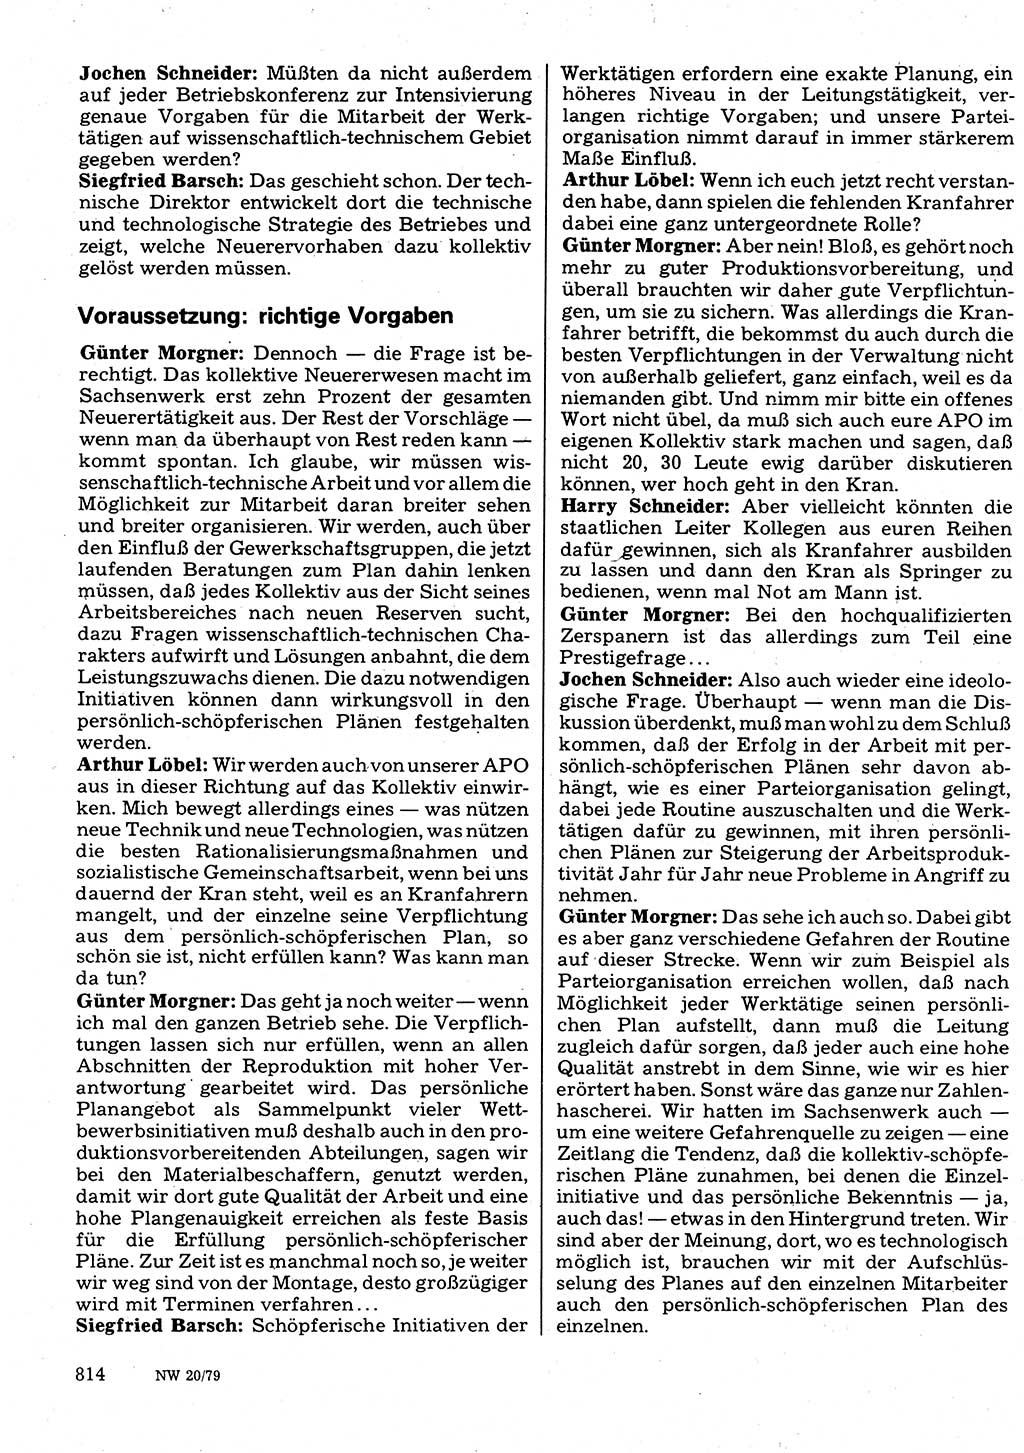 Neuer Weg (NW), Organ des Zentralkomitees (ZK) der SED (Sozialistische Einheitspartei Deutschlands) für Fragen des Parteilebens, 34. Jahrgang [Deutsche Demokratische Republik (DDR)] 1979, Seite 814 (NW ZK SED DDR 1979, S. 814)